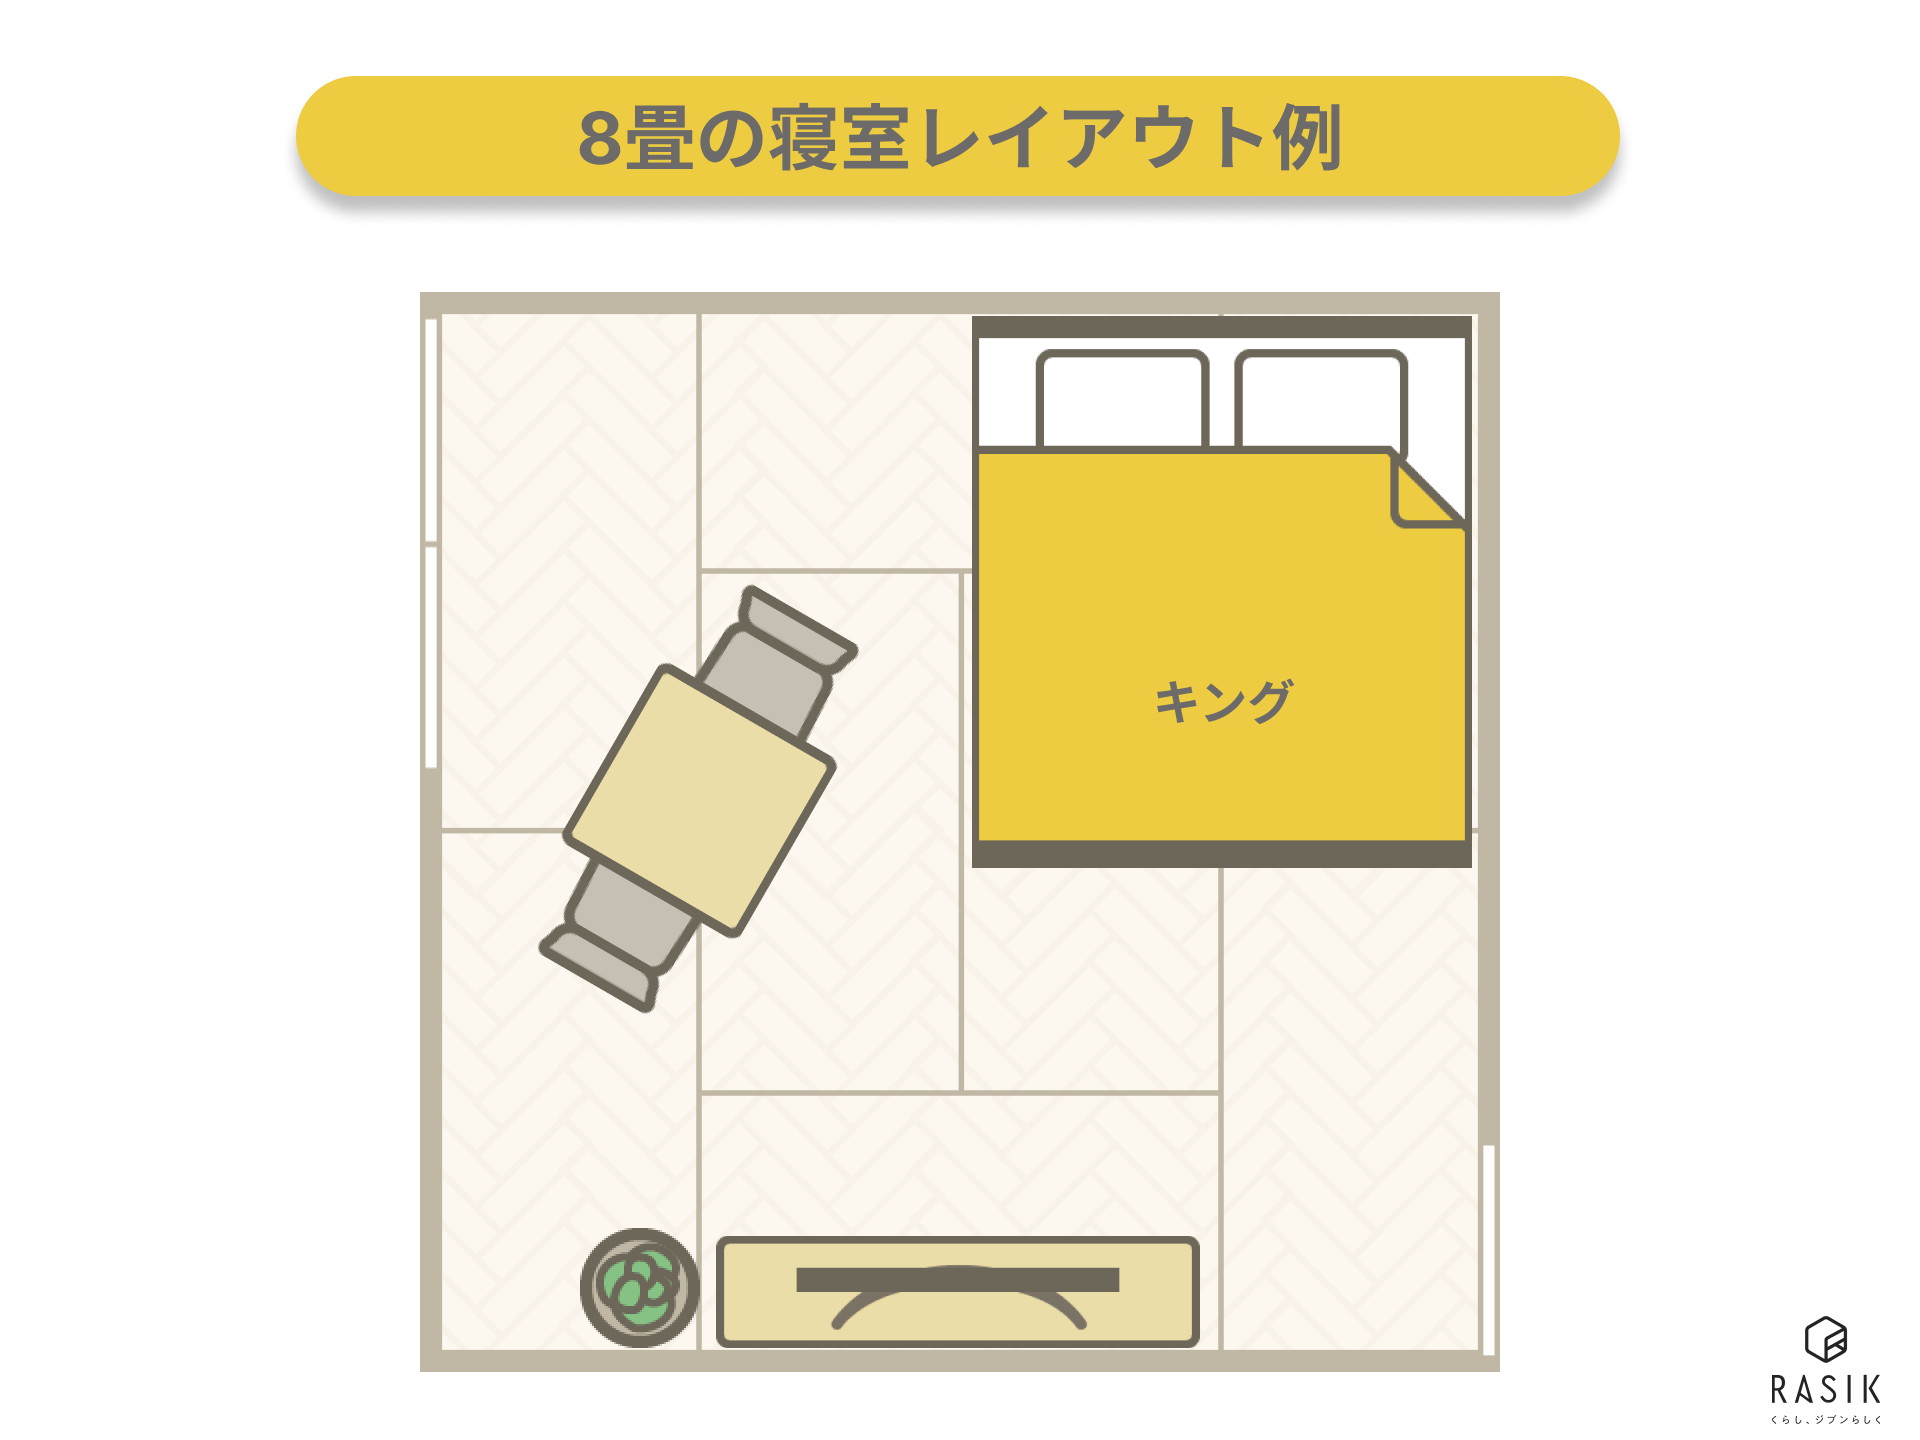 8畳の寝室インテリア配置例